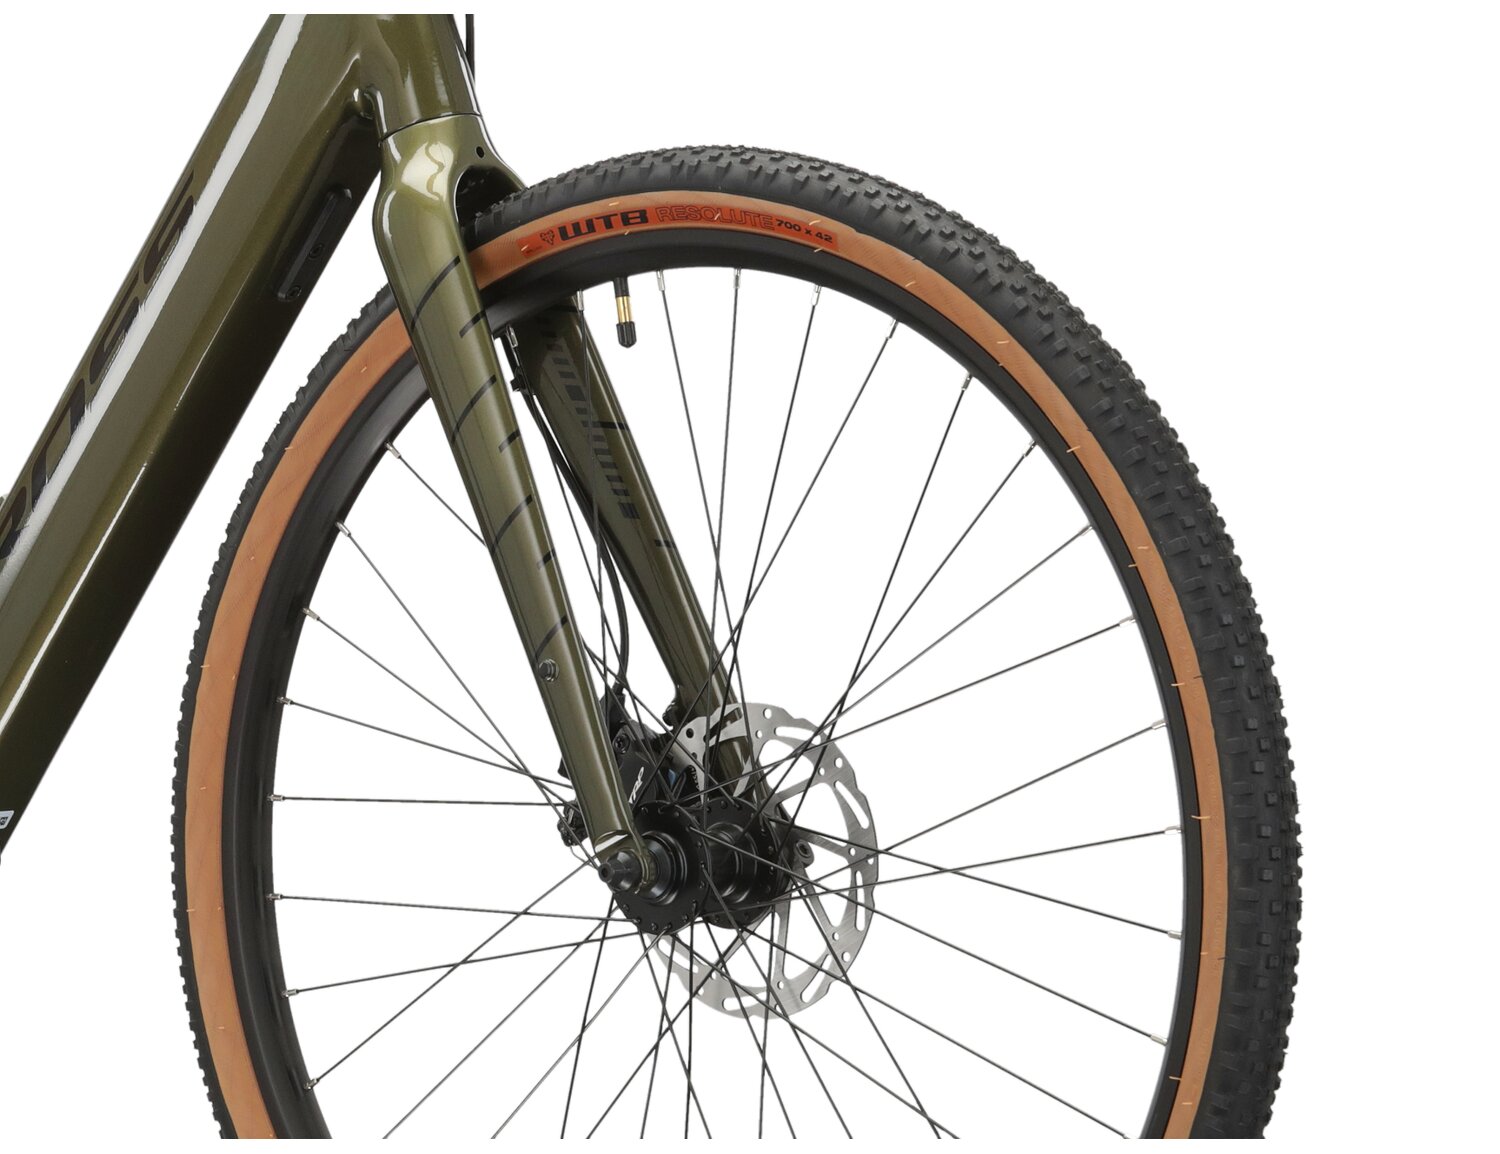  Aluminiowa rama, aluminowy sztywny widelec oraz opony WTB RESOLUTE COMP 700X42C w rowerze elektrycznym gravelowym ebike Kross Esker Hybrid 2.0 MS 